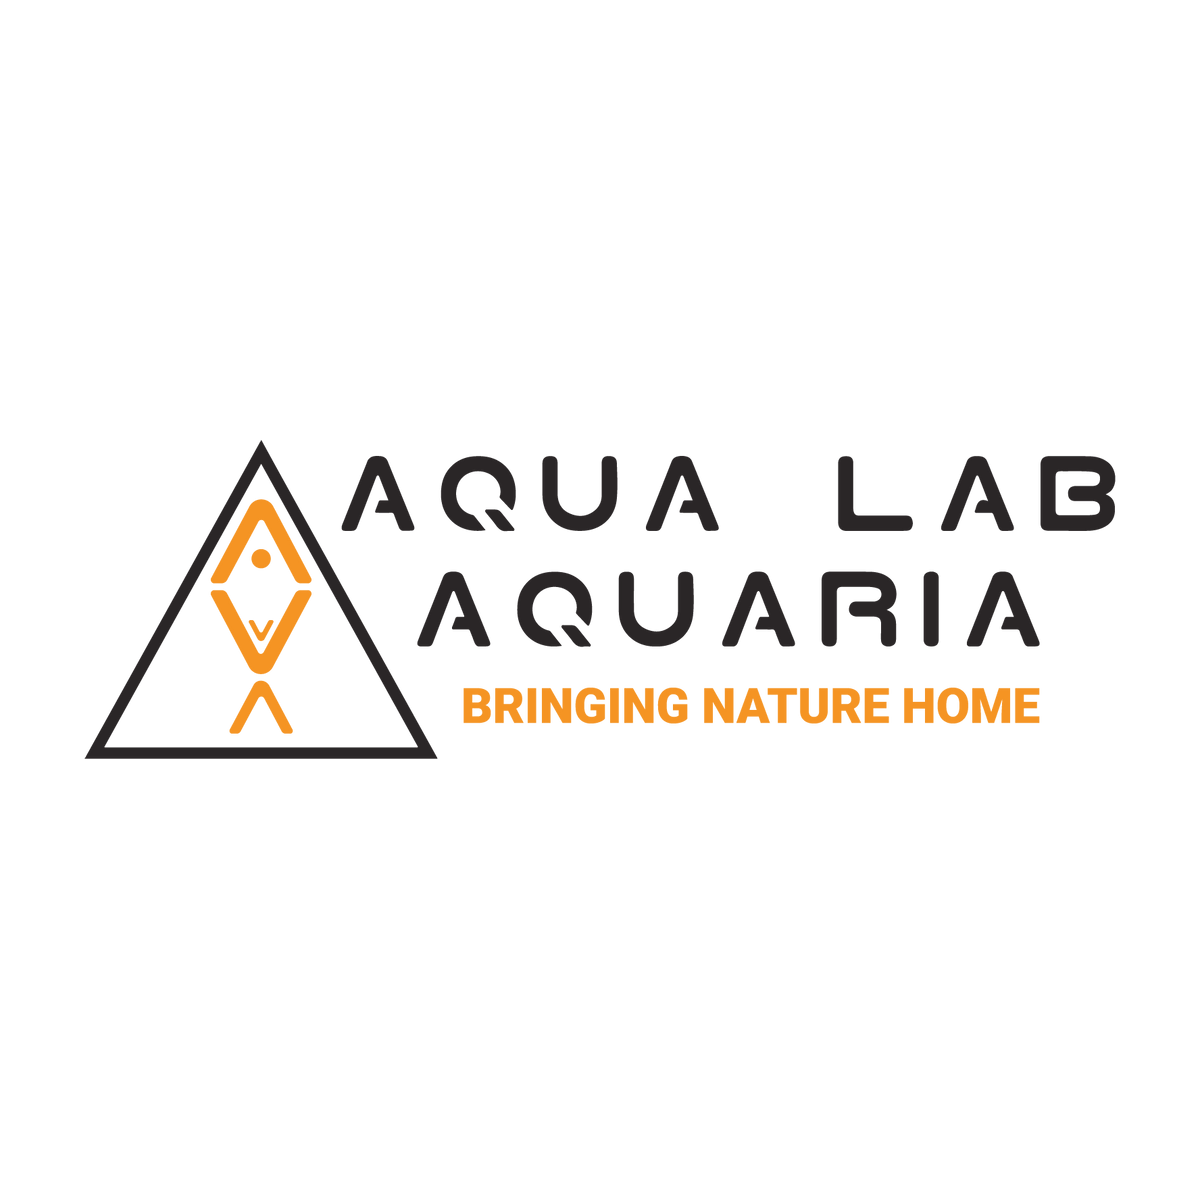 Aqua Lab Aquaria